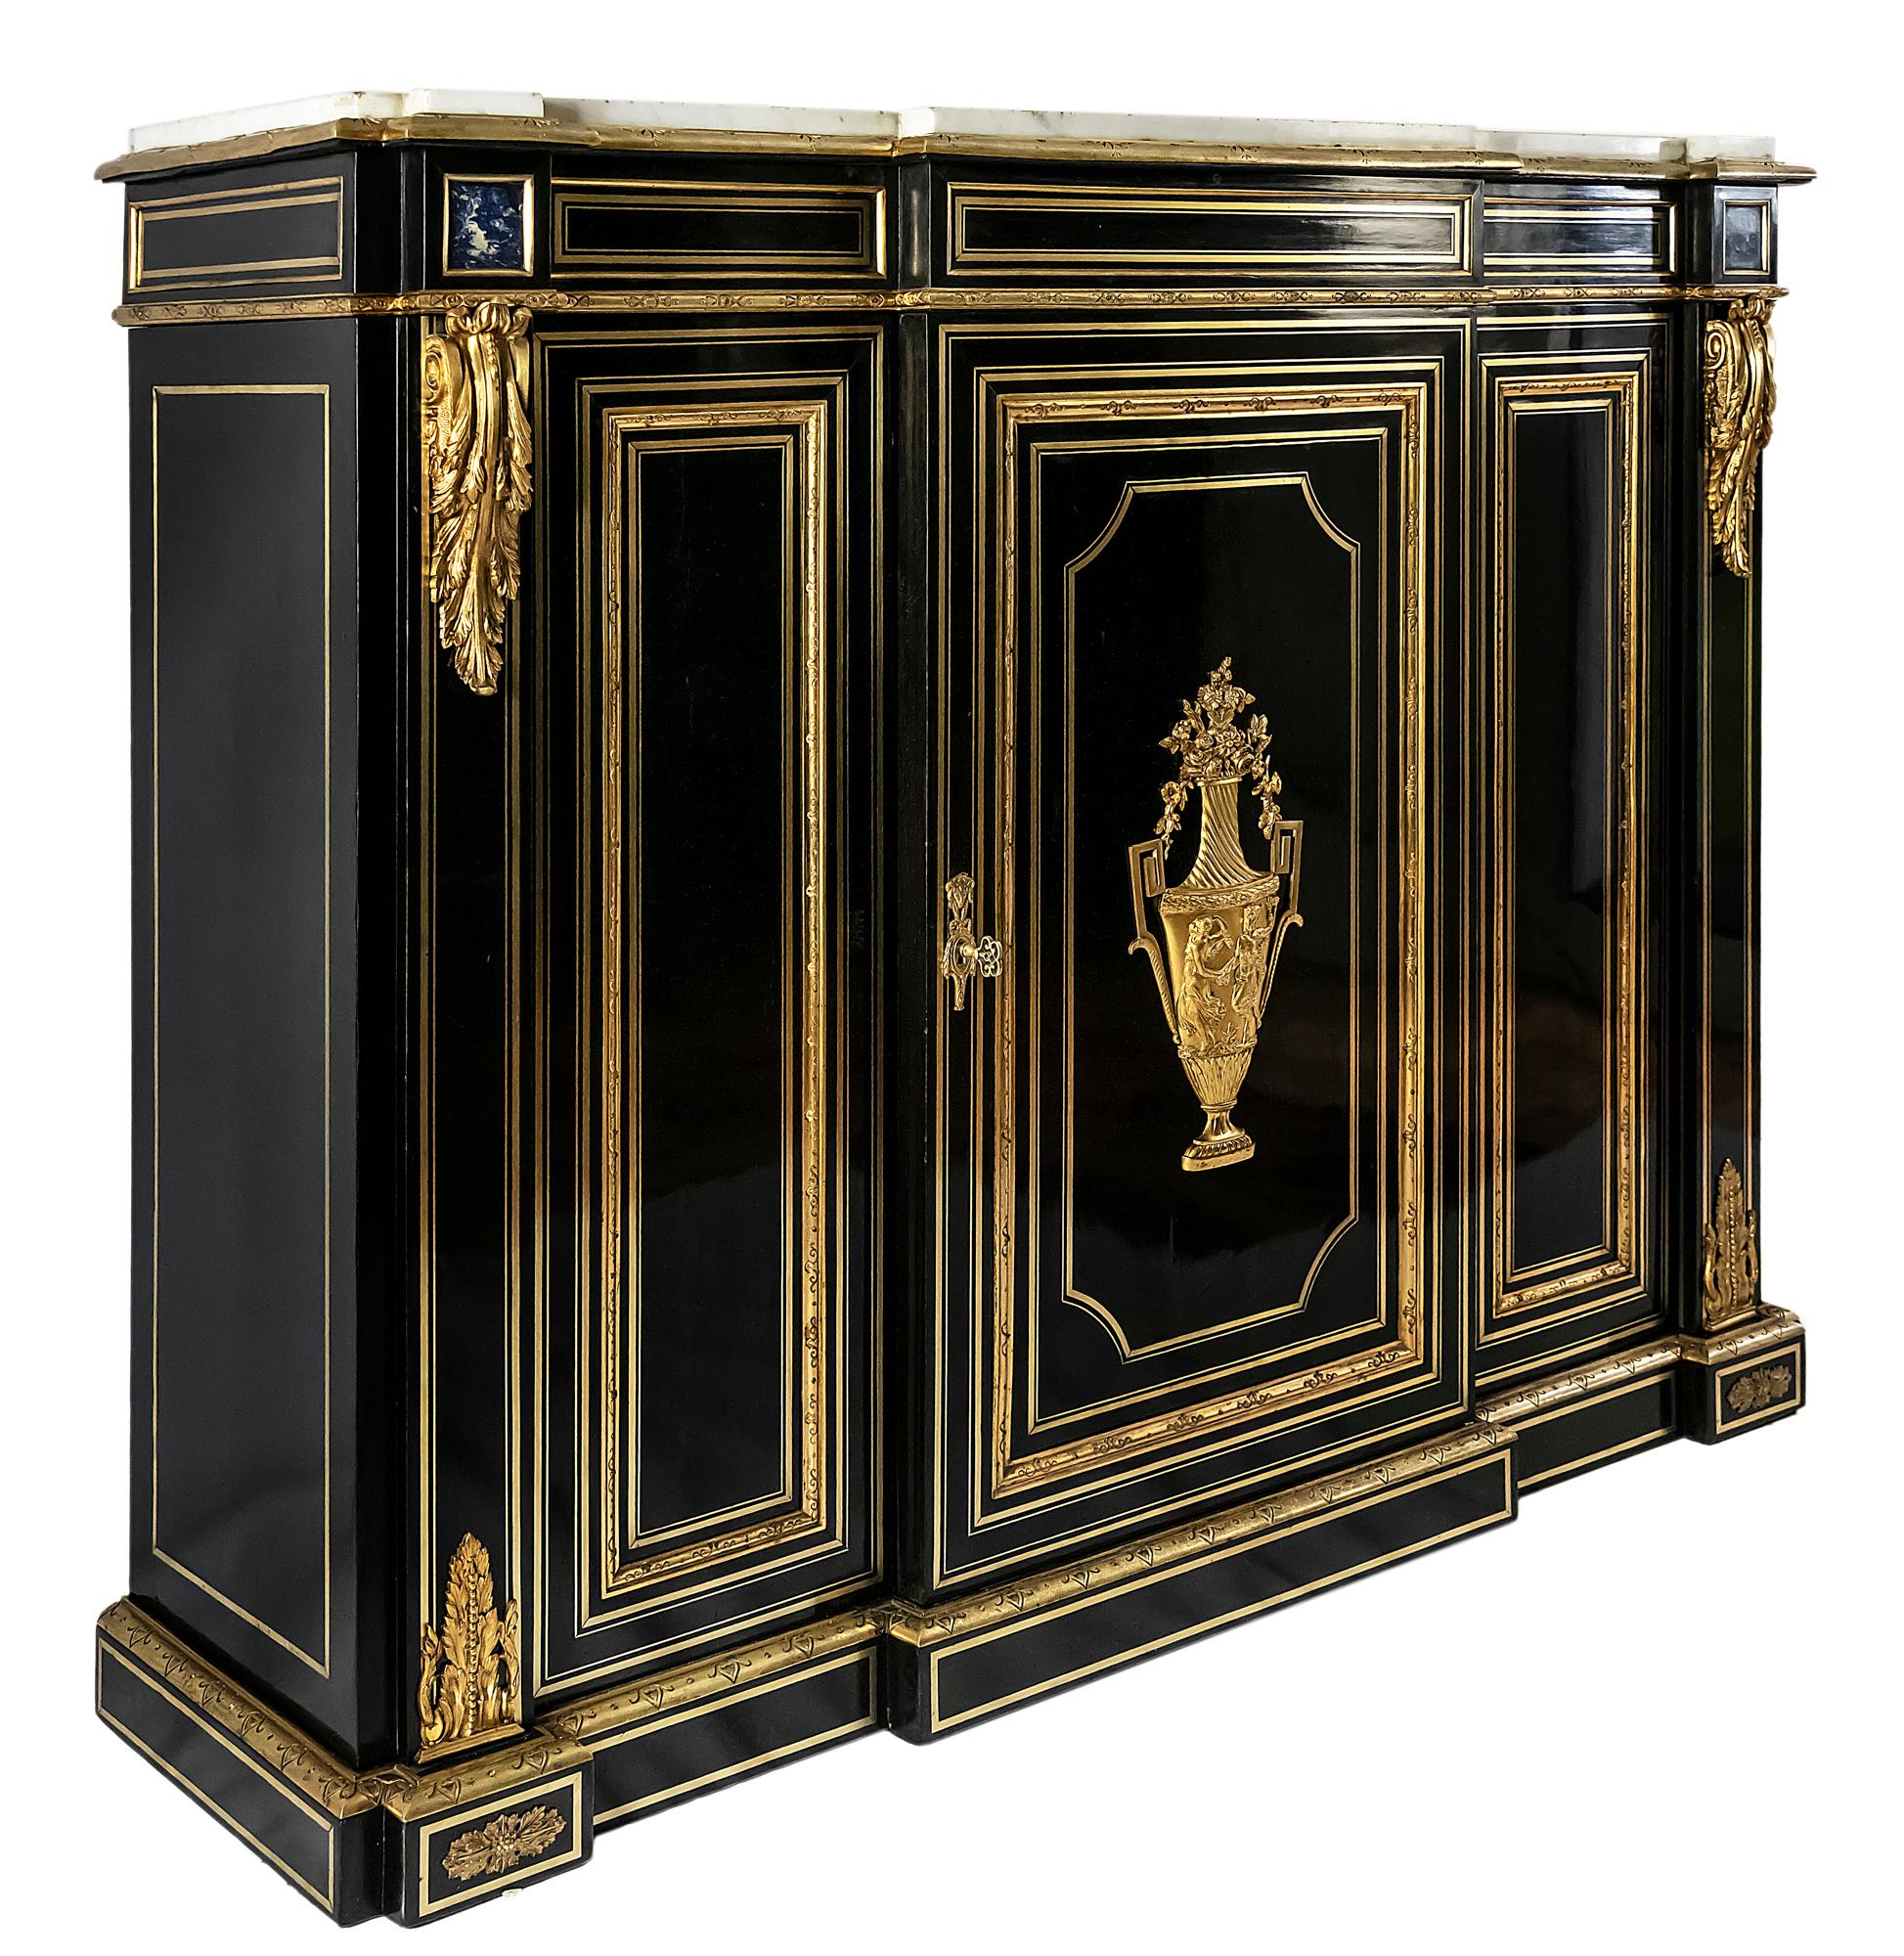 Cabinet français antique Napoléon III.
Le bois a une surface polie de couleur noire, décorée de bandes de laiton incrustées, de détails en bronze à l'extérieur et de lazurite, une pierre naturelle.
À l'intérieur du meuble, il y a deux